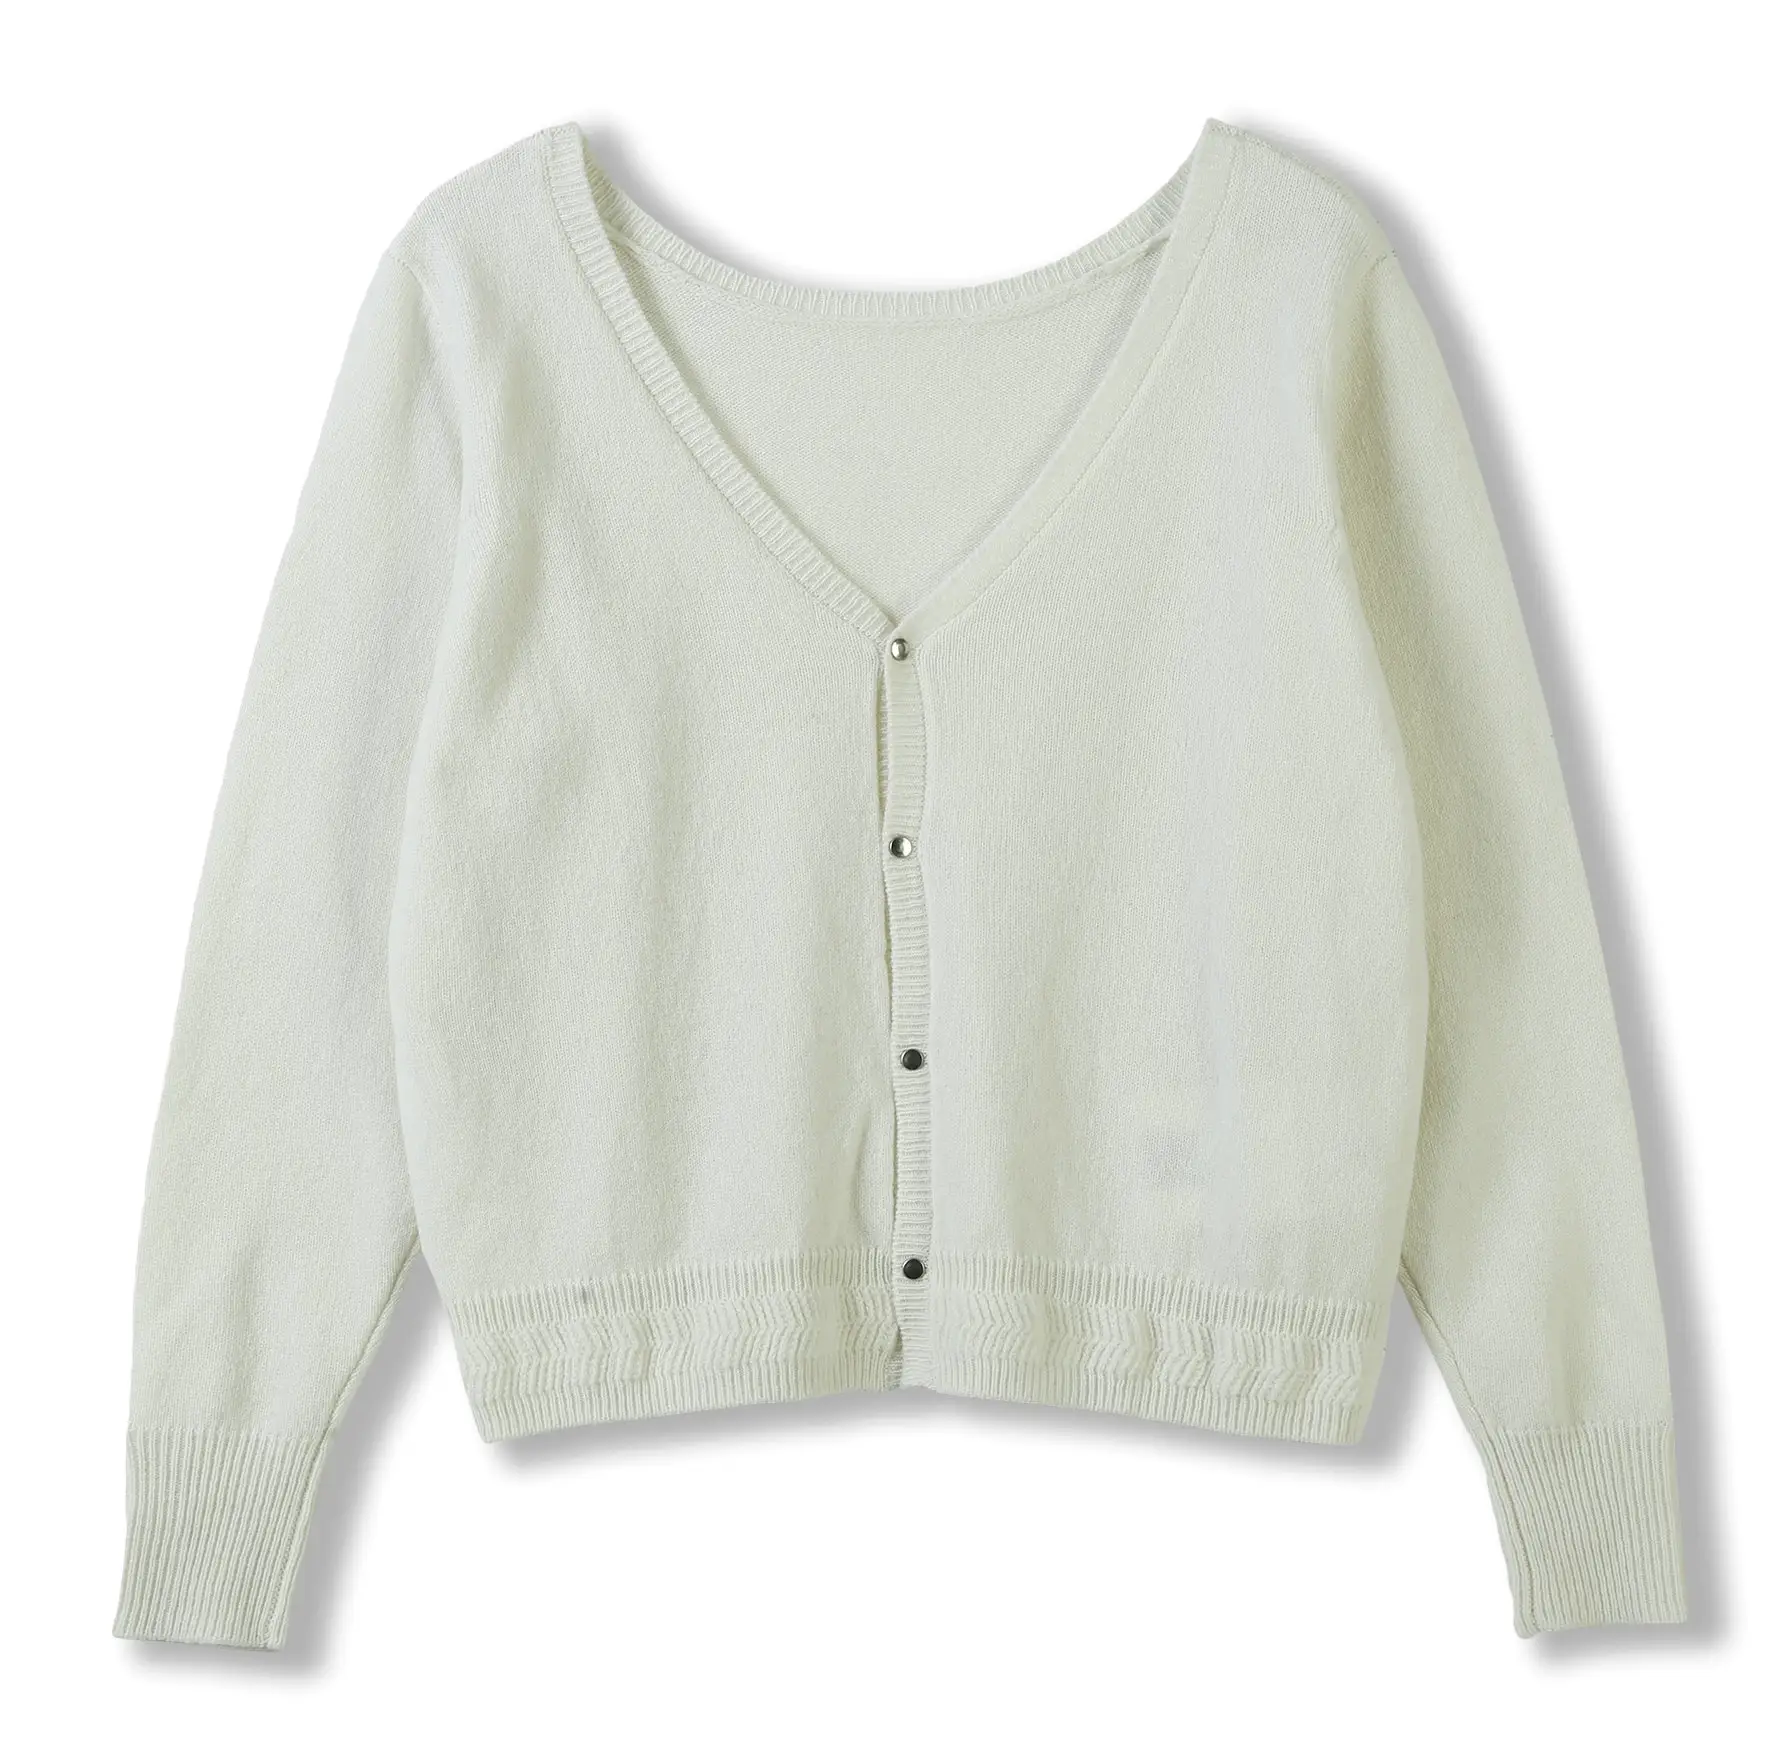 Cardigan a maniche lunghe Cardigan bianco elegante maglione lavorato a maglia con bottoni in metallo con motivo a costine maglione Cardigan caldo